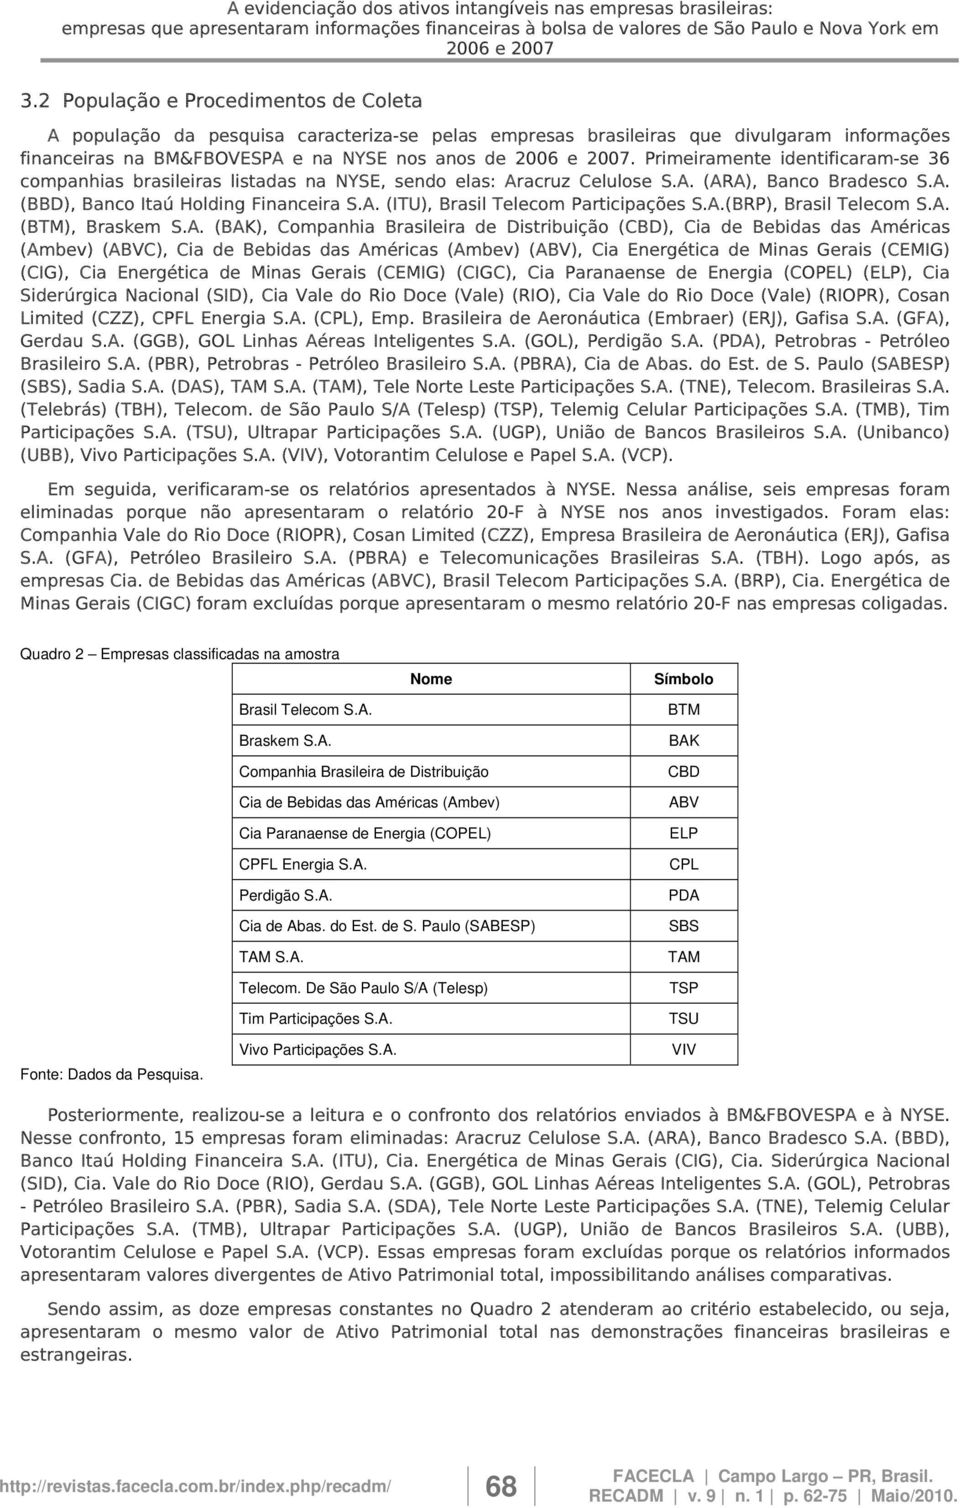 Primeiramente identificaram-se 36 companhias brasileiras listadas na NYSE, sendo elas: Aracruz Celulose S.A. (ARA), Banco Bradesco S.A. (BBD), Banco Itaú Holding Financeira S.A. (ITU), Brasil Telecom Participações S.